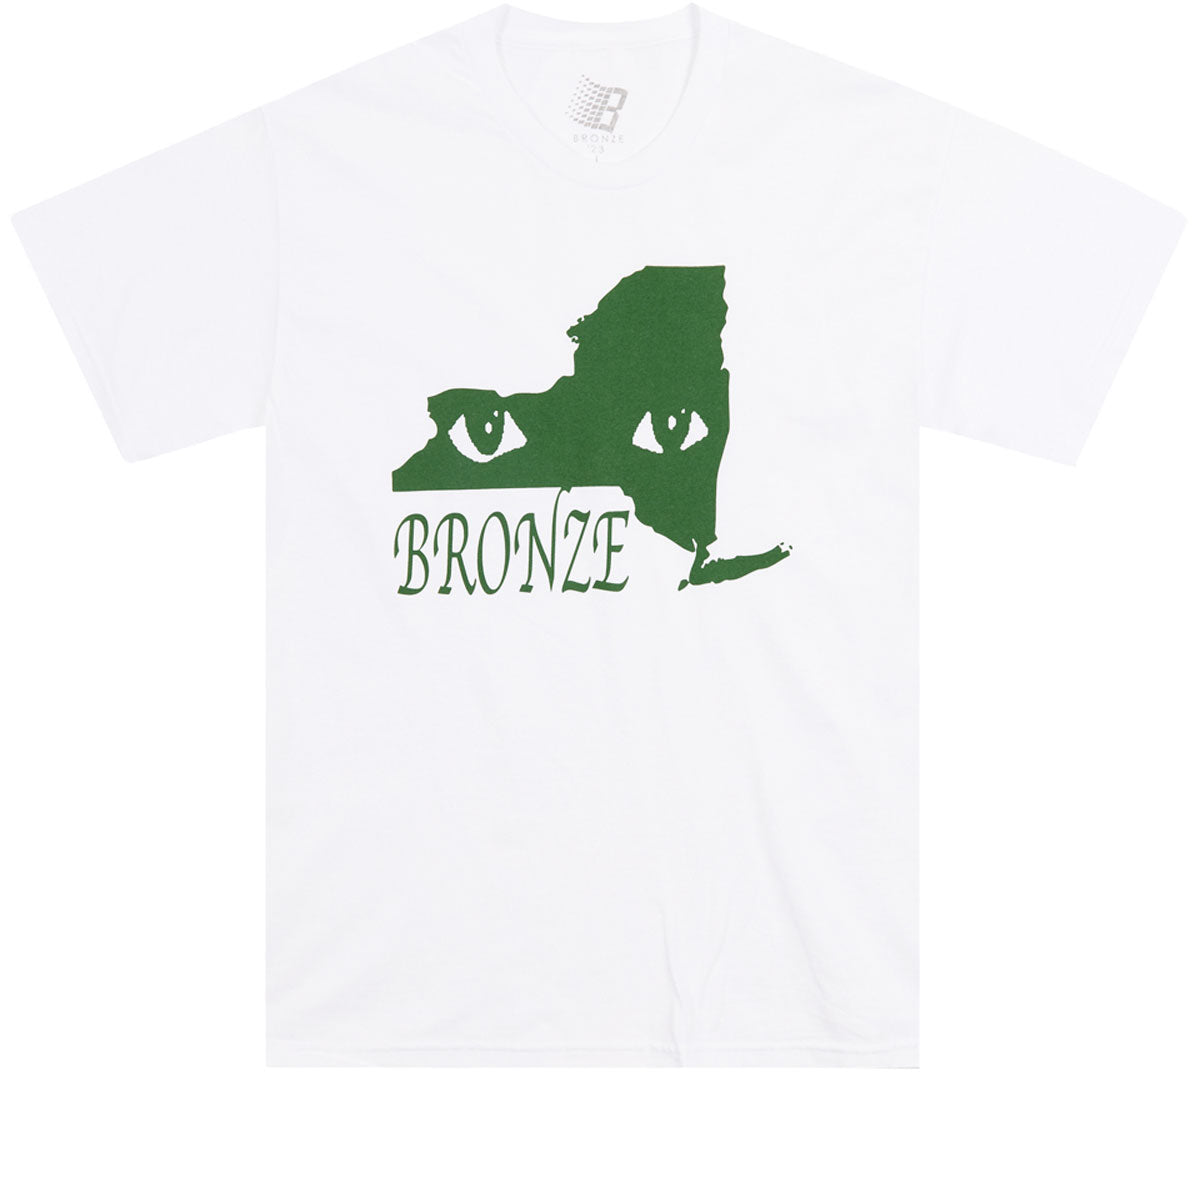 Bronze 56k Ny Eyes T-Shirt - White image 1